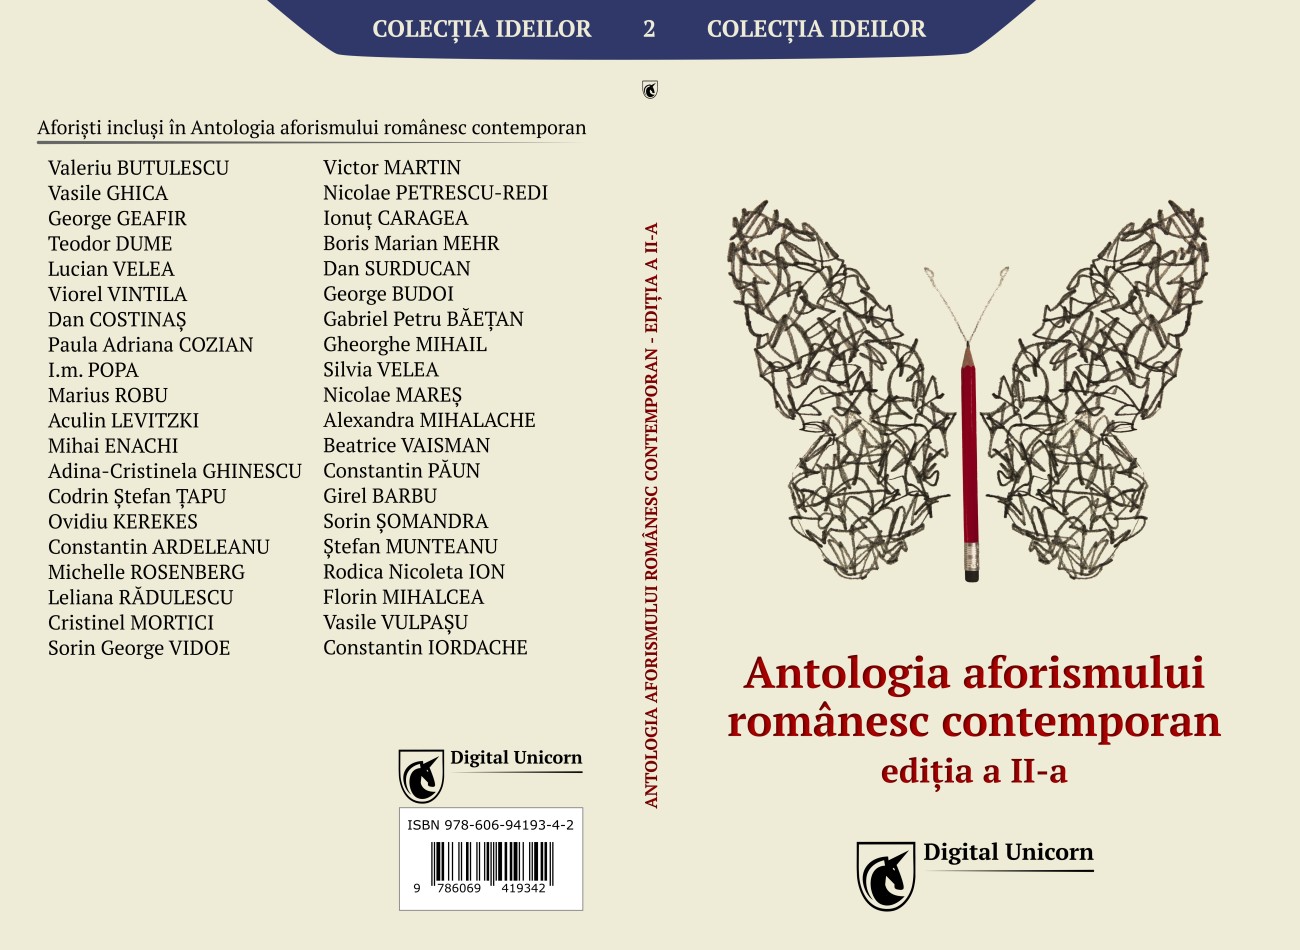 Antologia aforismului romanesc contemporan – coperta 1300×950